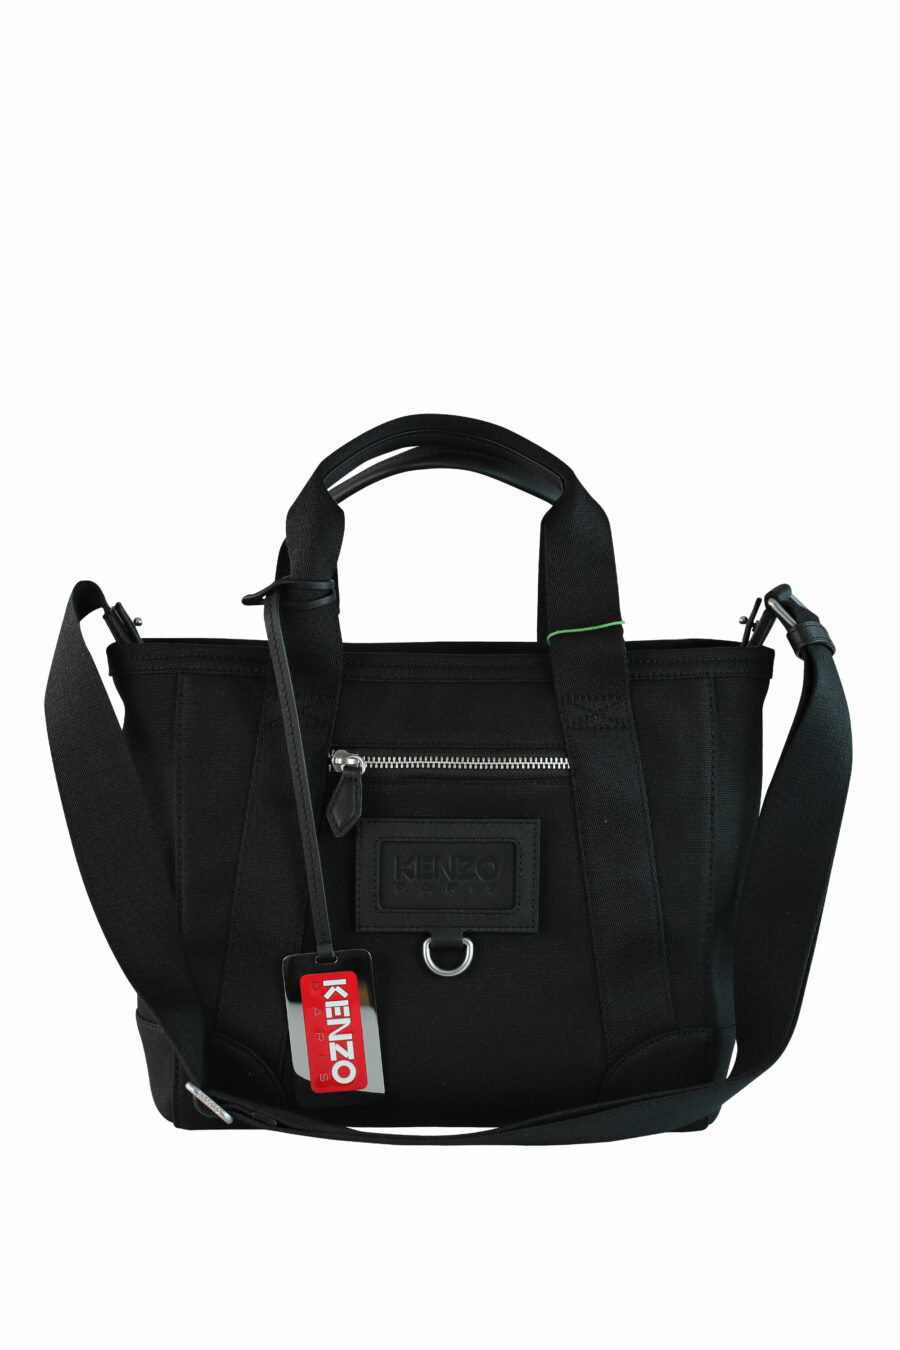 Tote bag bandolera negro con logo "paris" - IMG 1055